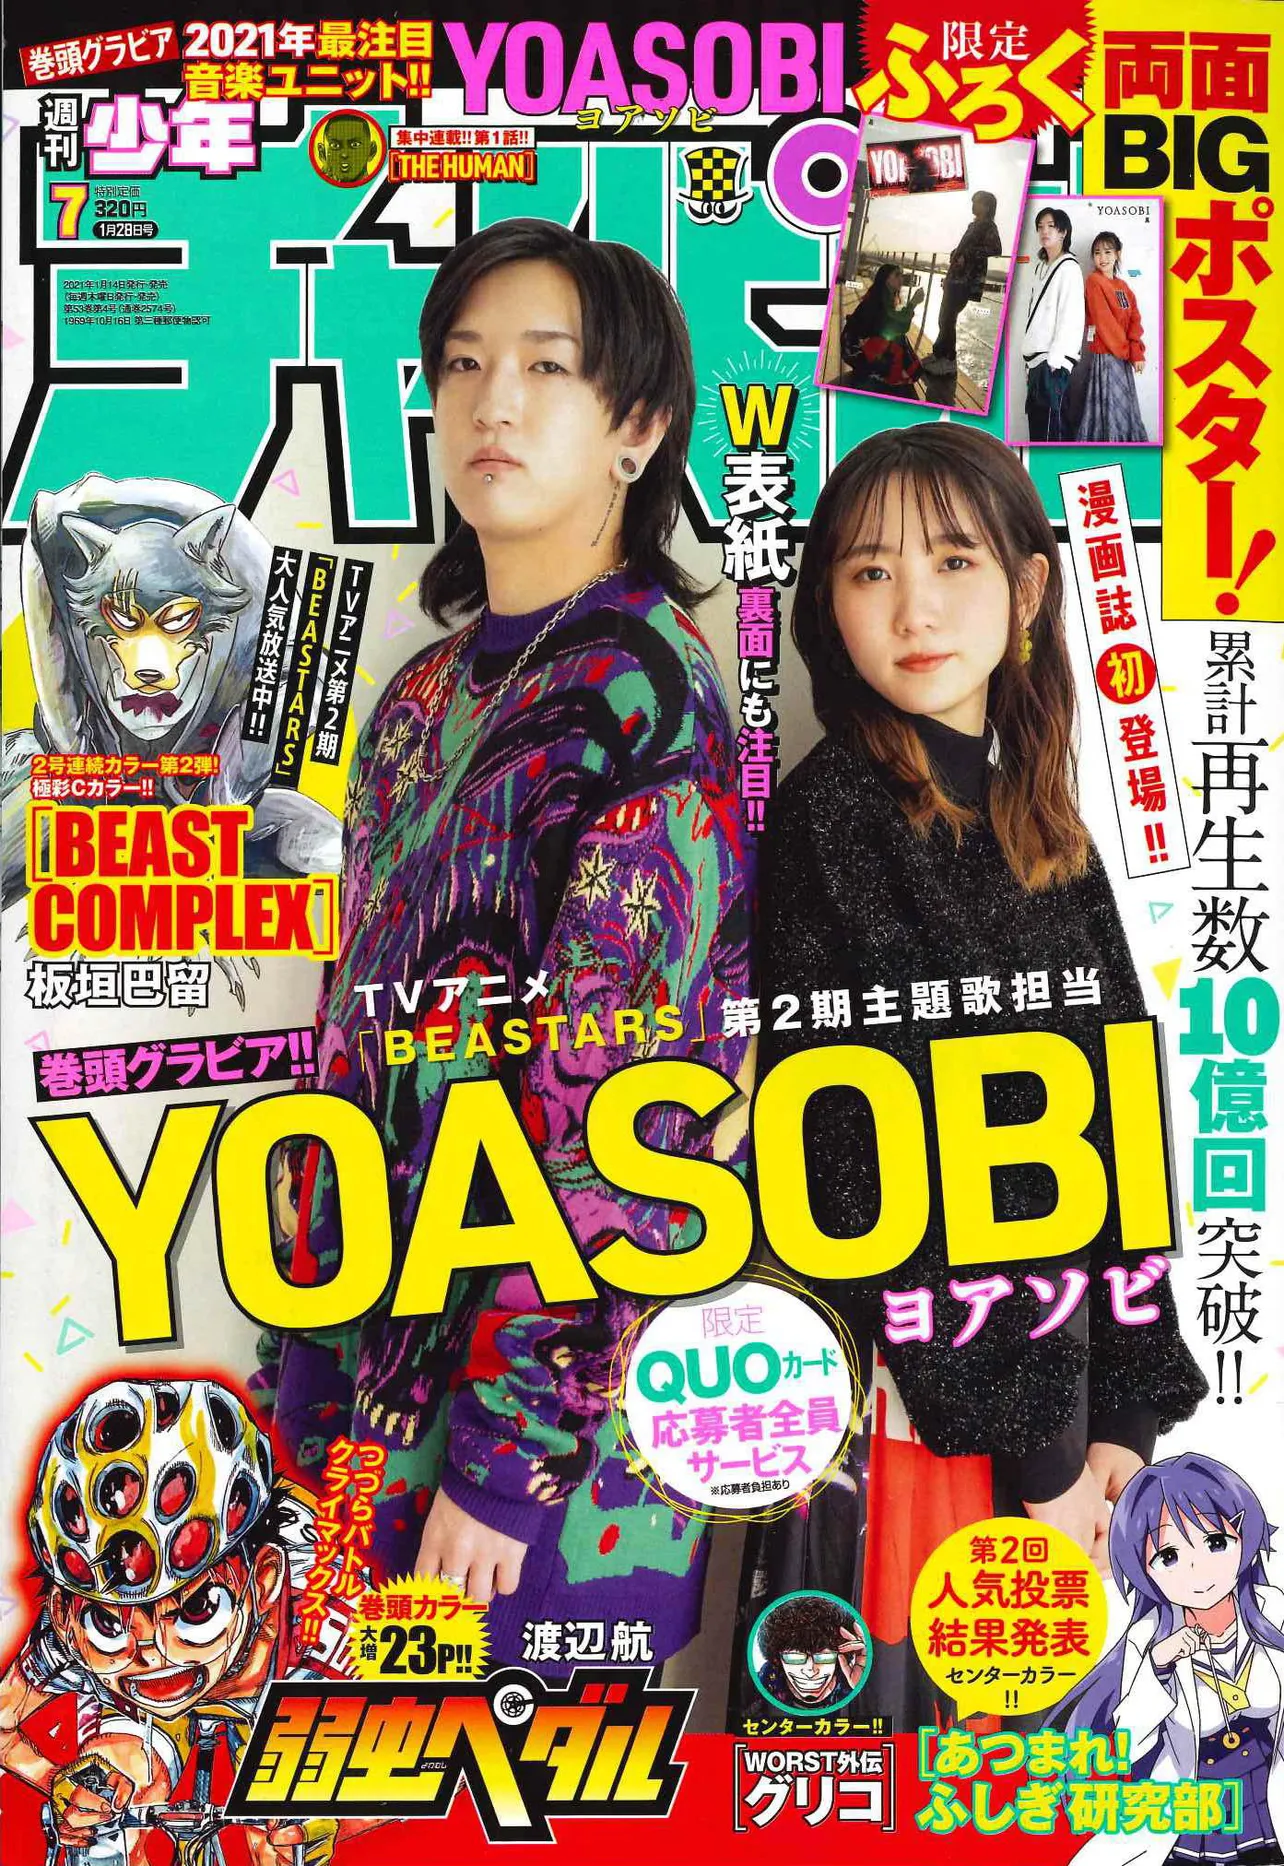 YOASOBIが1月14日発売の「週刊少年チャンピオン」で表紙を飾った